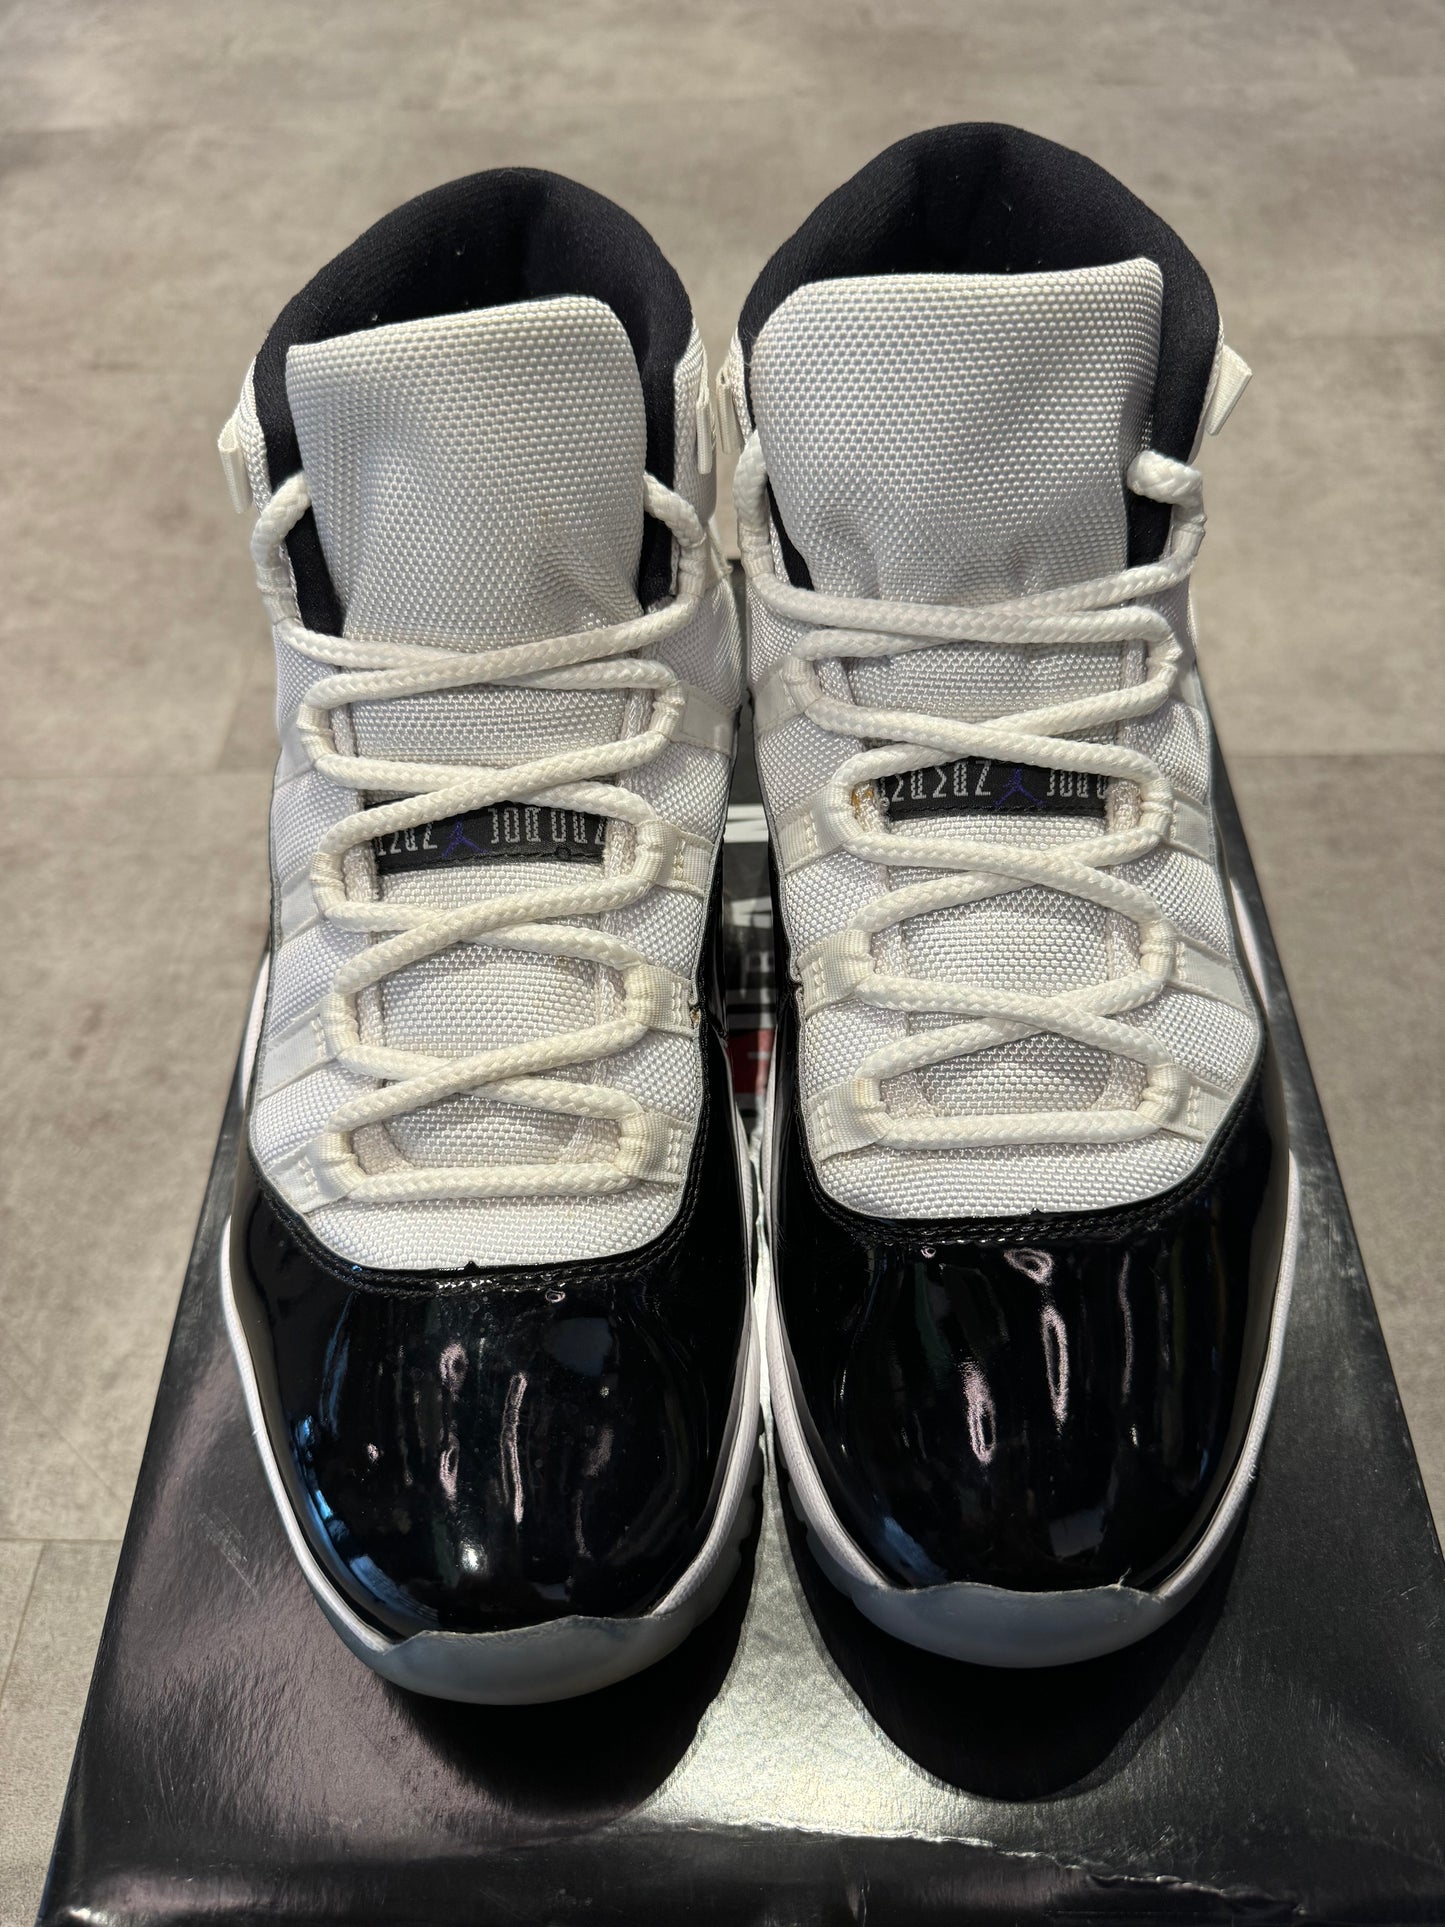 Jordan 11 Retro Concord (2018) (Preowned Size 10.5)